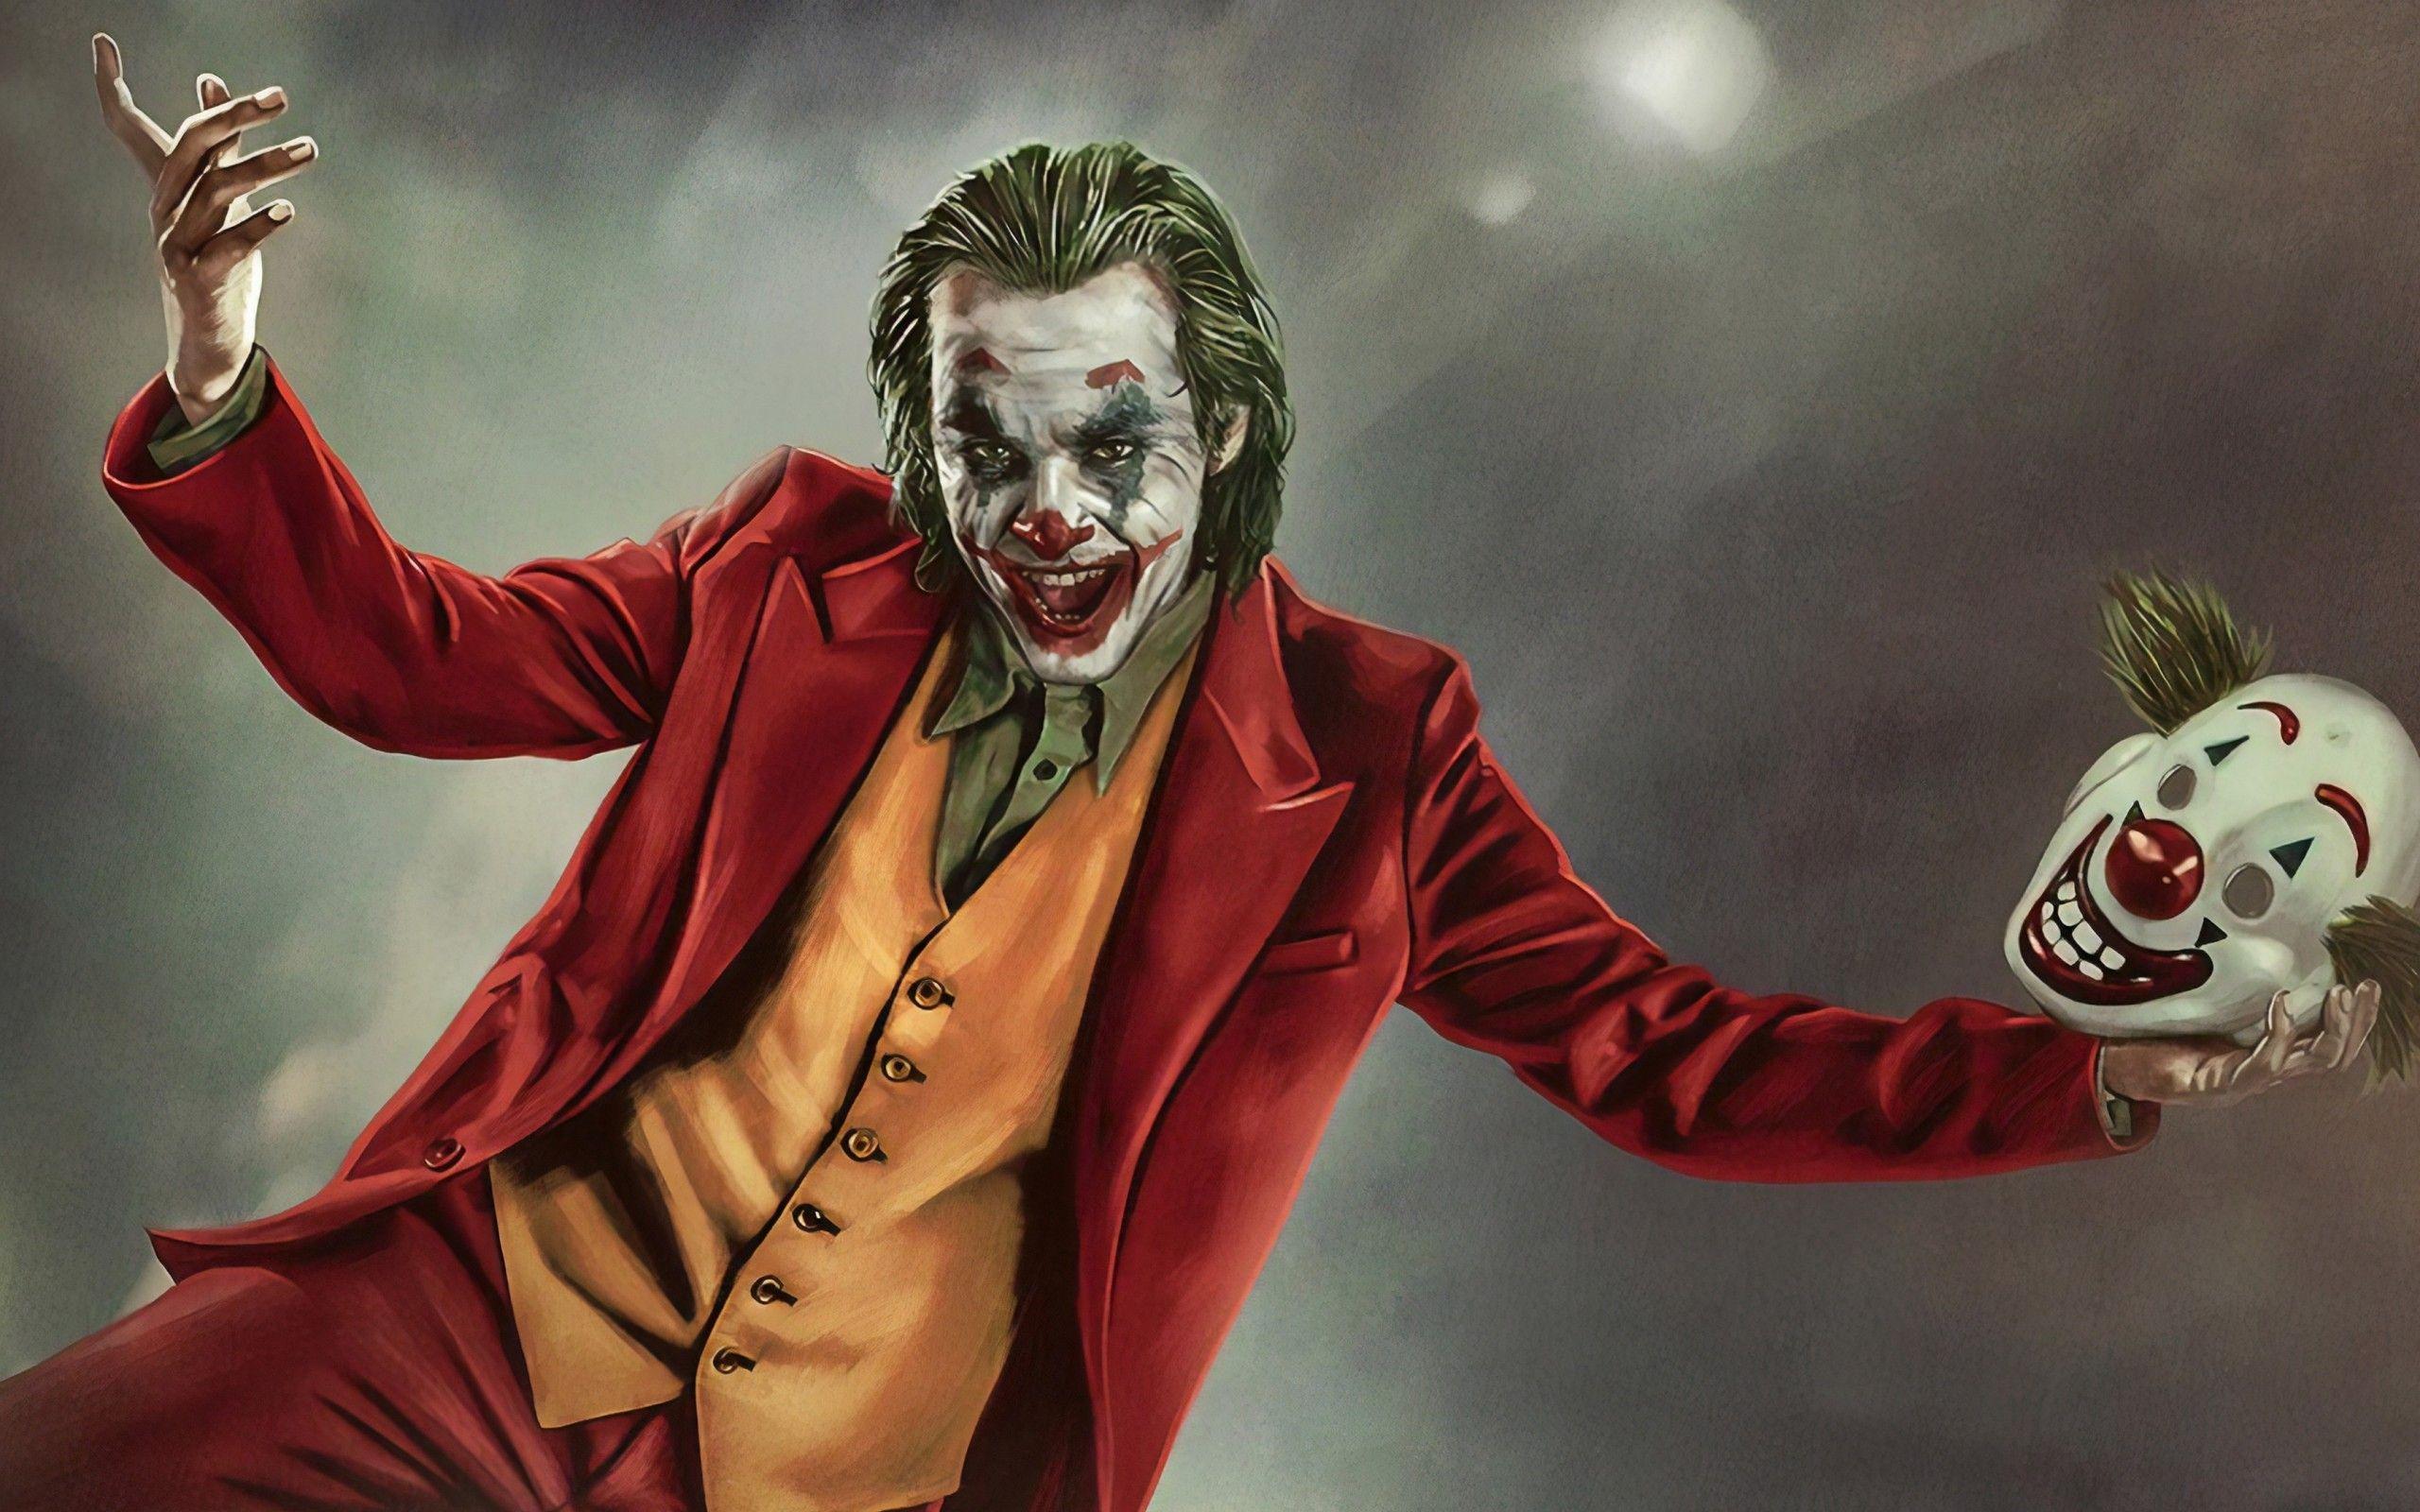 Joker 2019 Wallpapers - Top Free Joker 2019 Backgrounds - WallpaperAccess